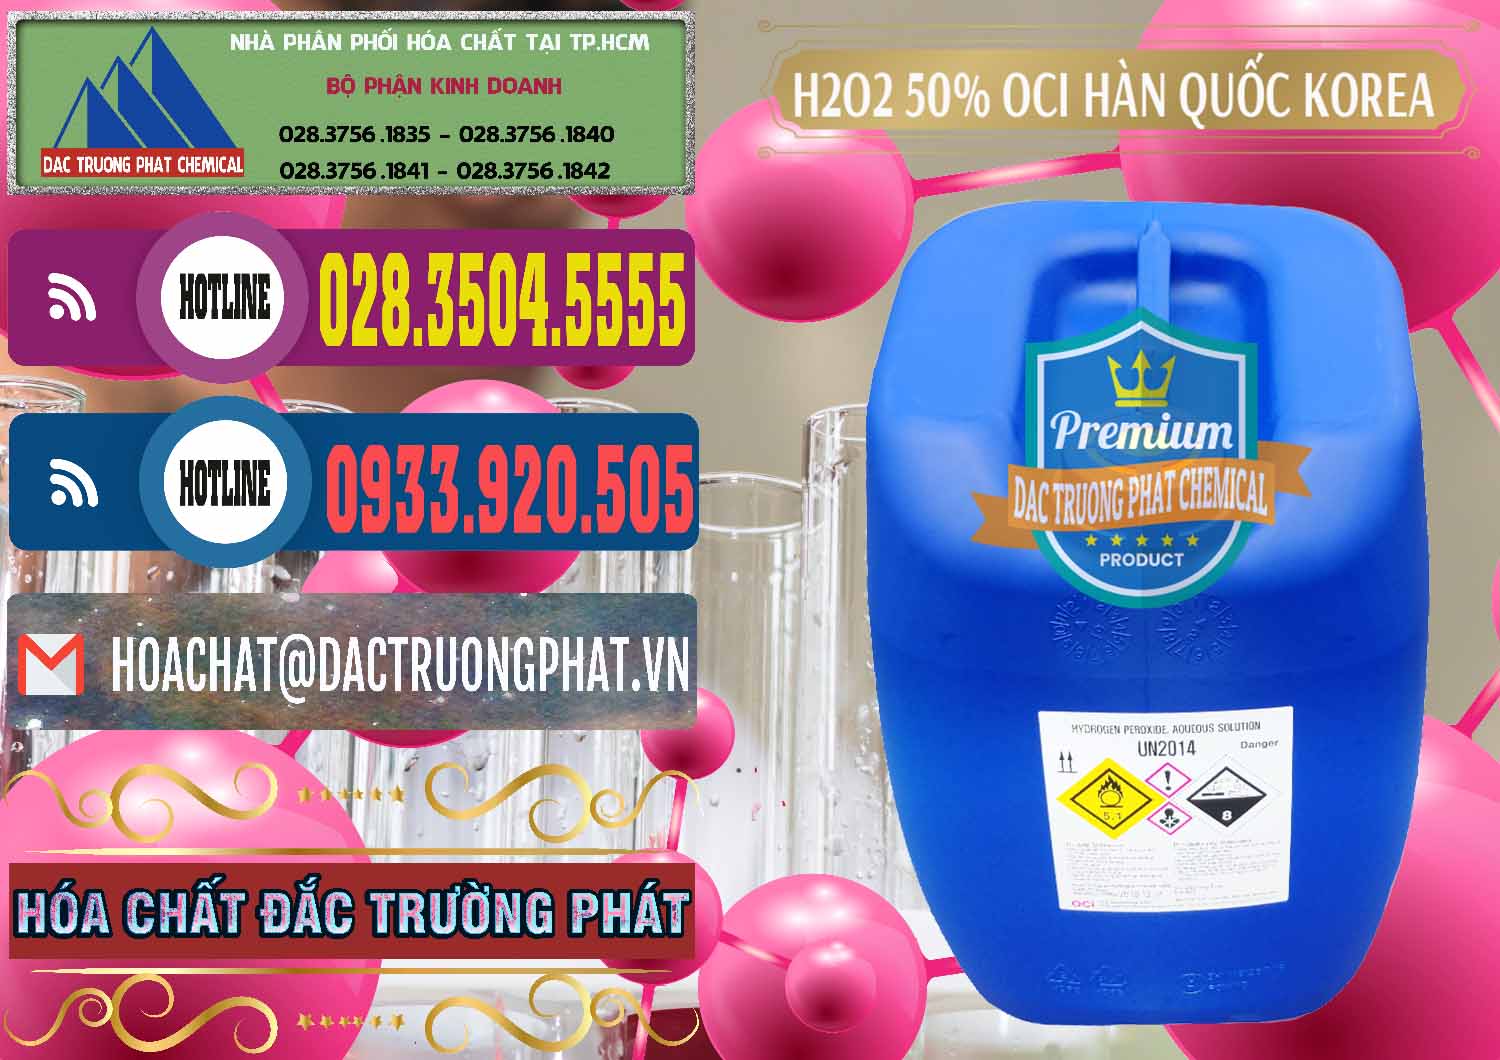 Cty phân phối & bán H2O2 - Hydrogen Peroxide 50% OCI Hàn Quốc Korea - 0075 - Chuyên bán & cung cấp hóa chất tại TP.HCM - muabanhoachat.com.vn